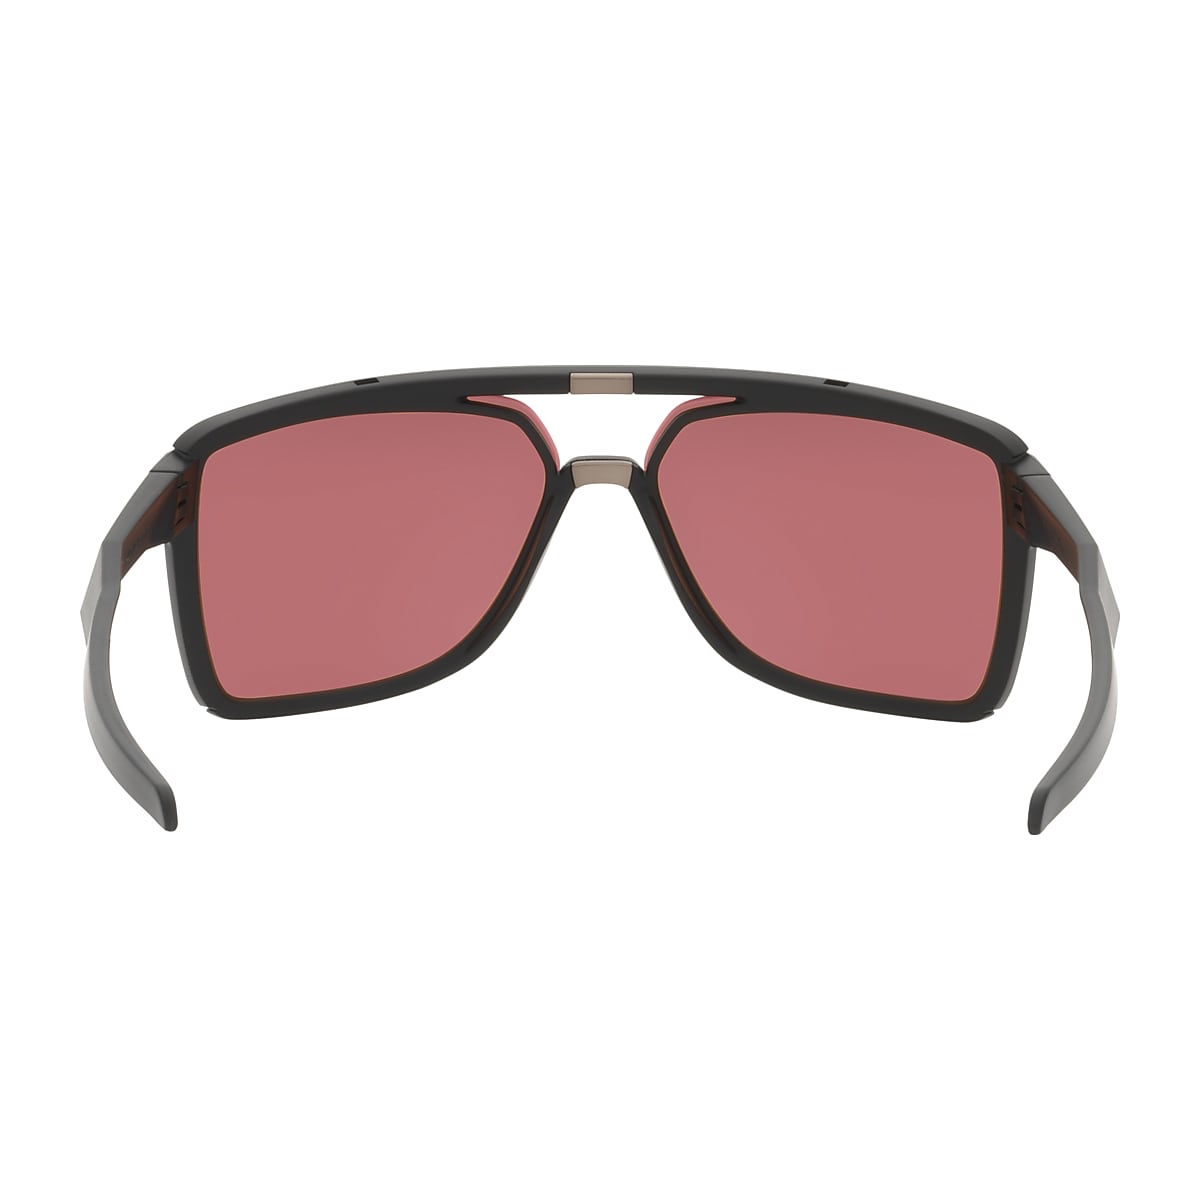 Castel Prizm Dark Golf Lenses, Matte Black Frame Sunglasses